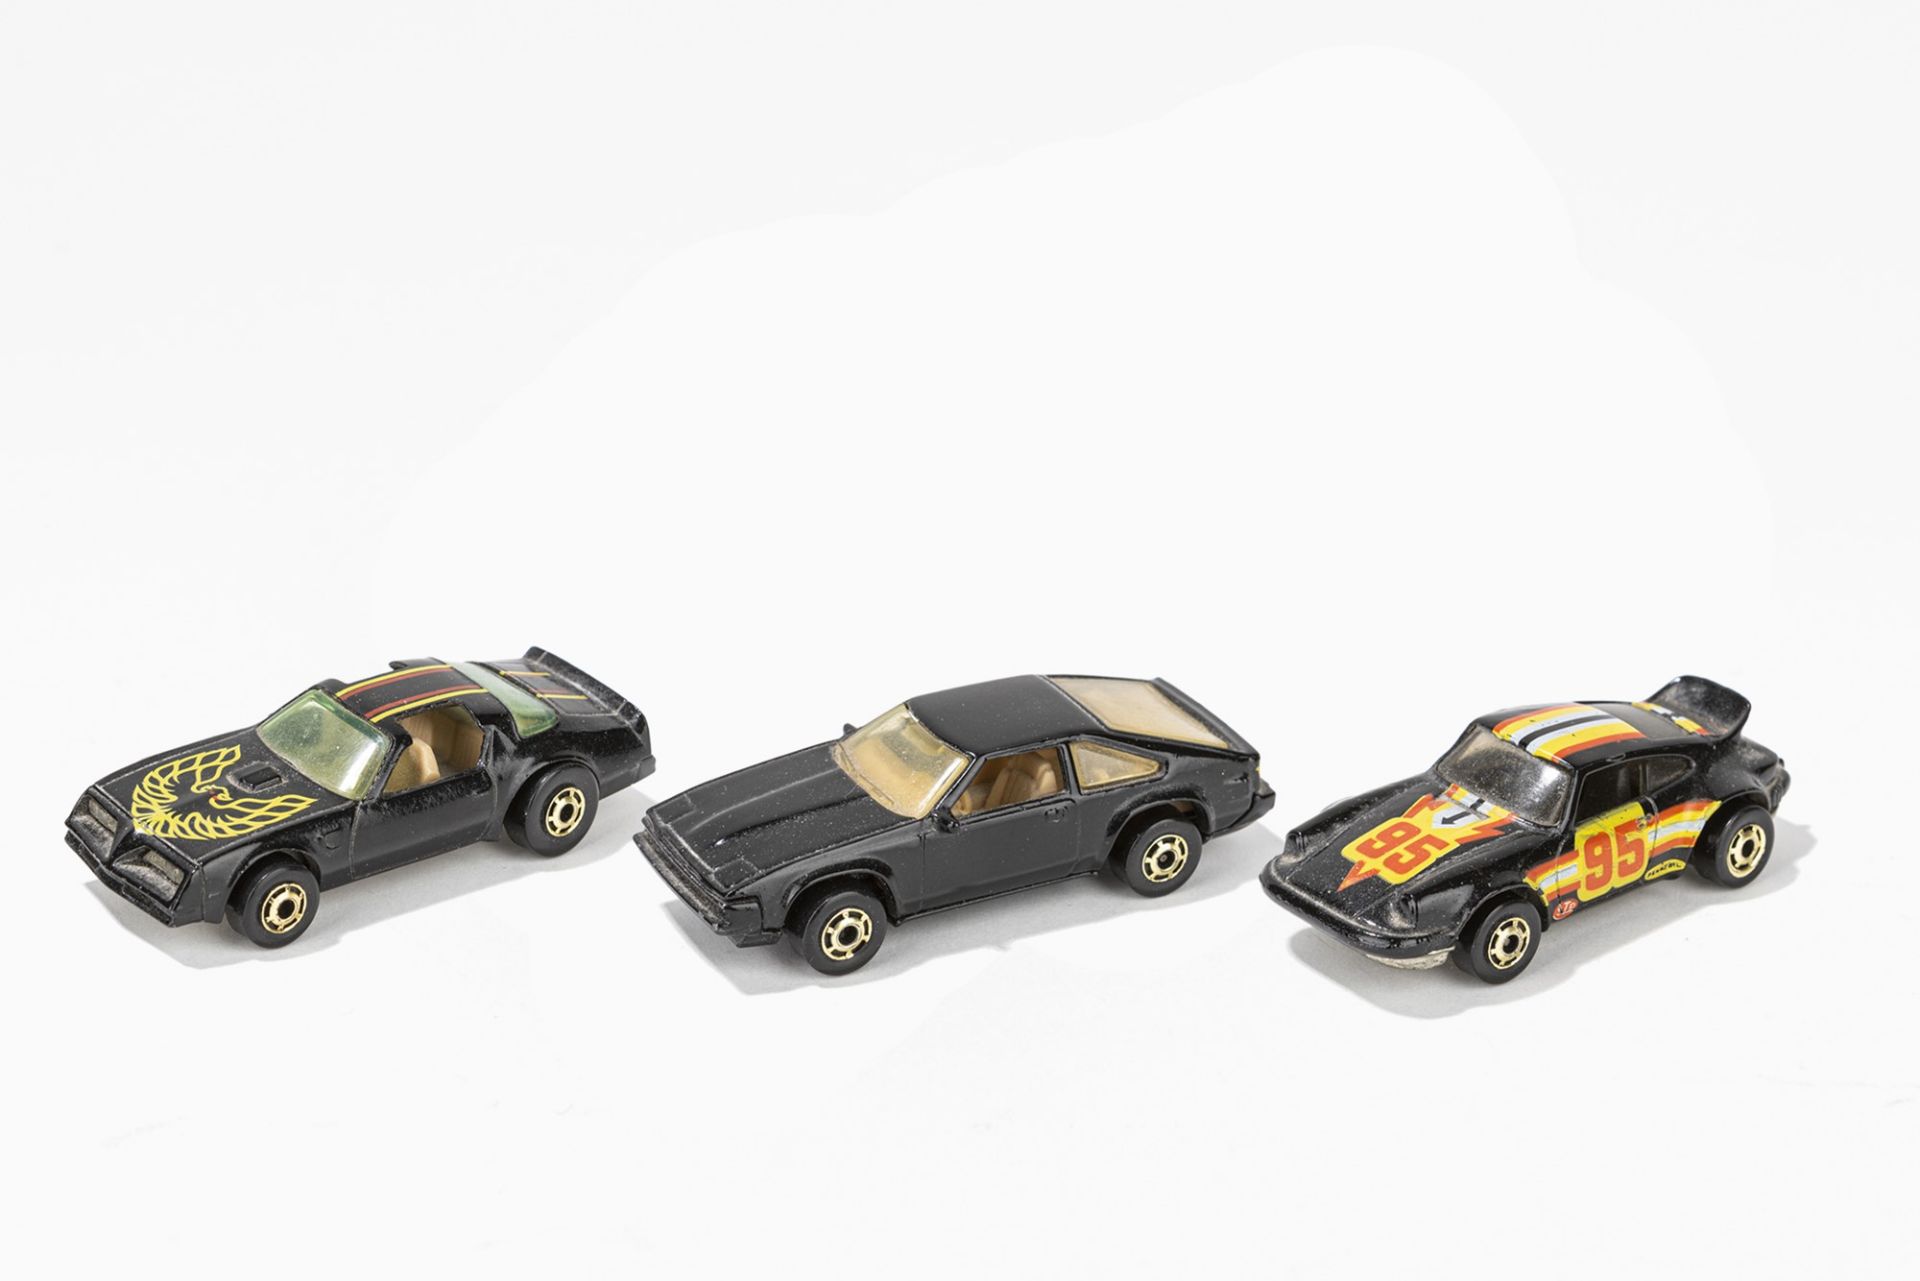 Hot Weels - 3 car models